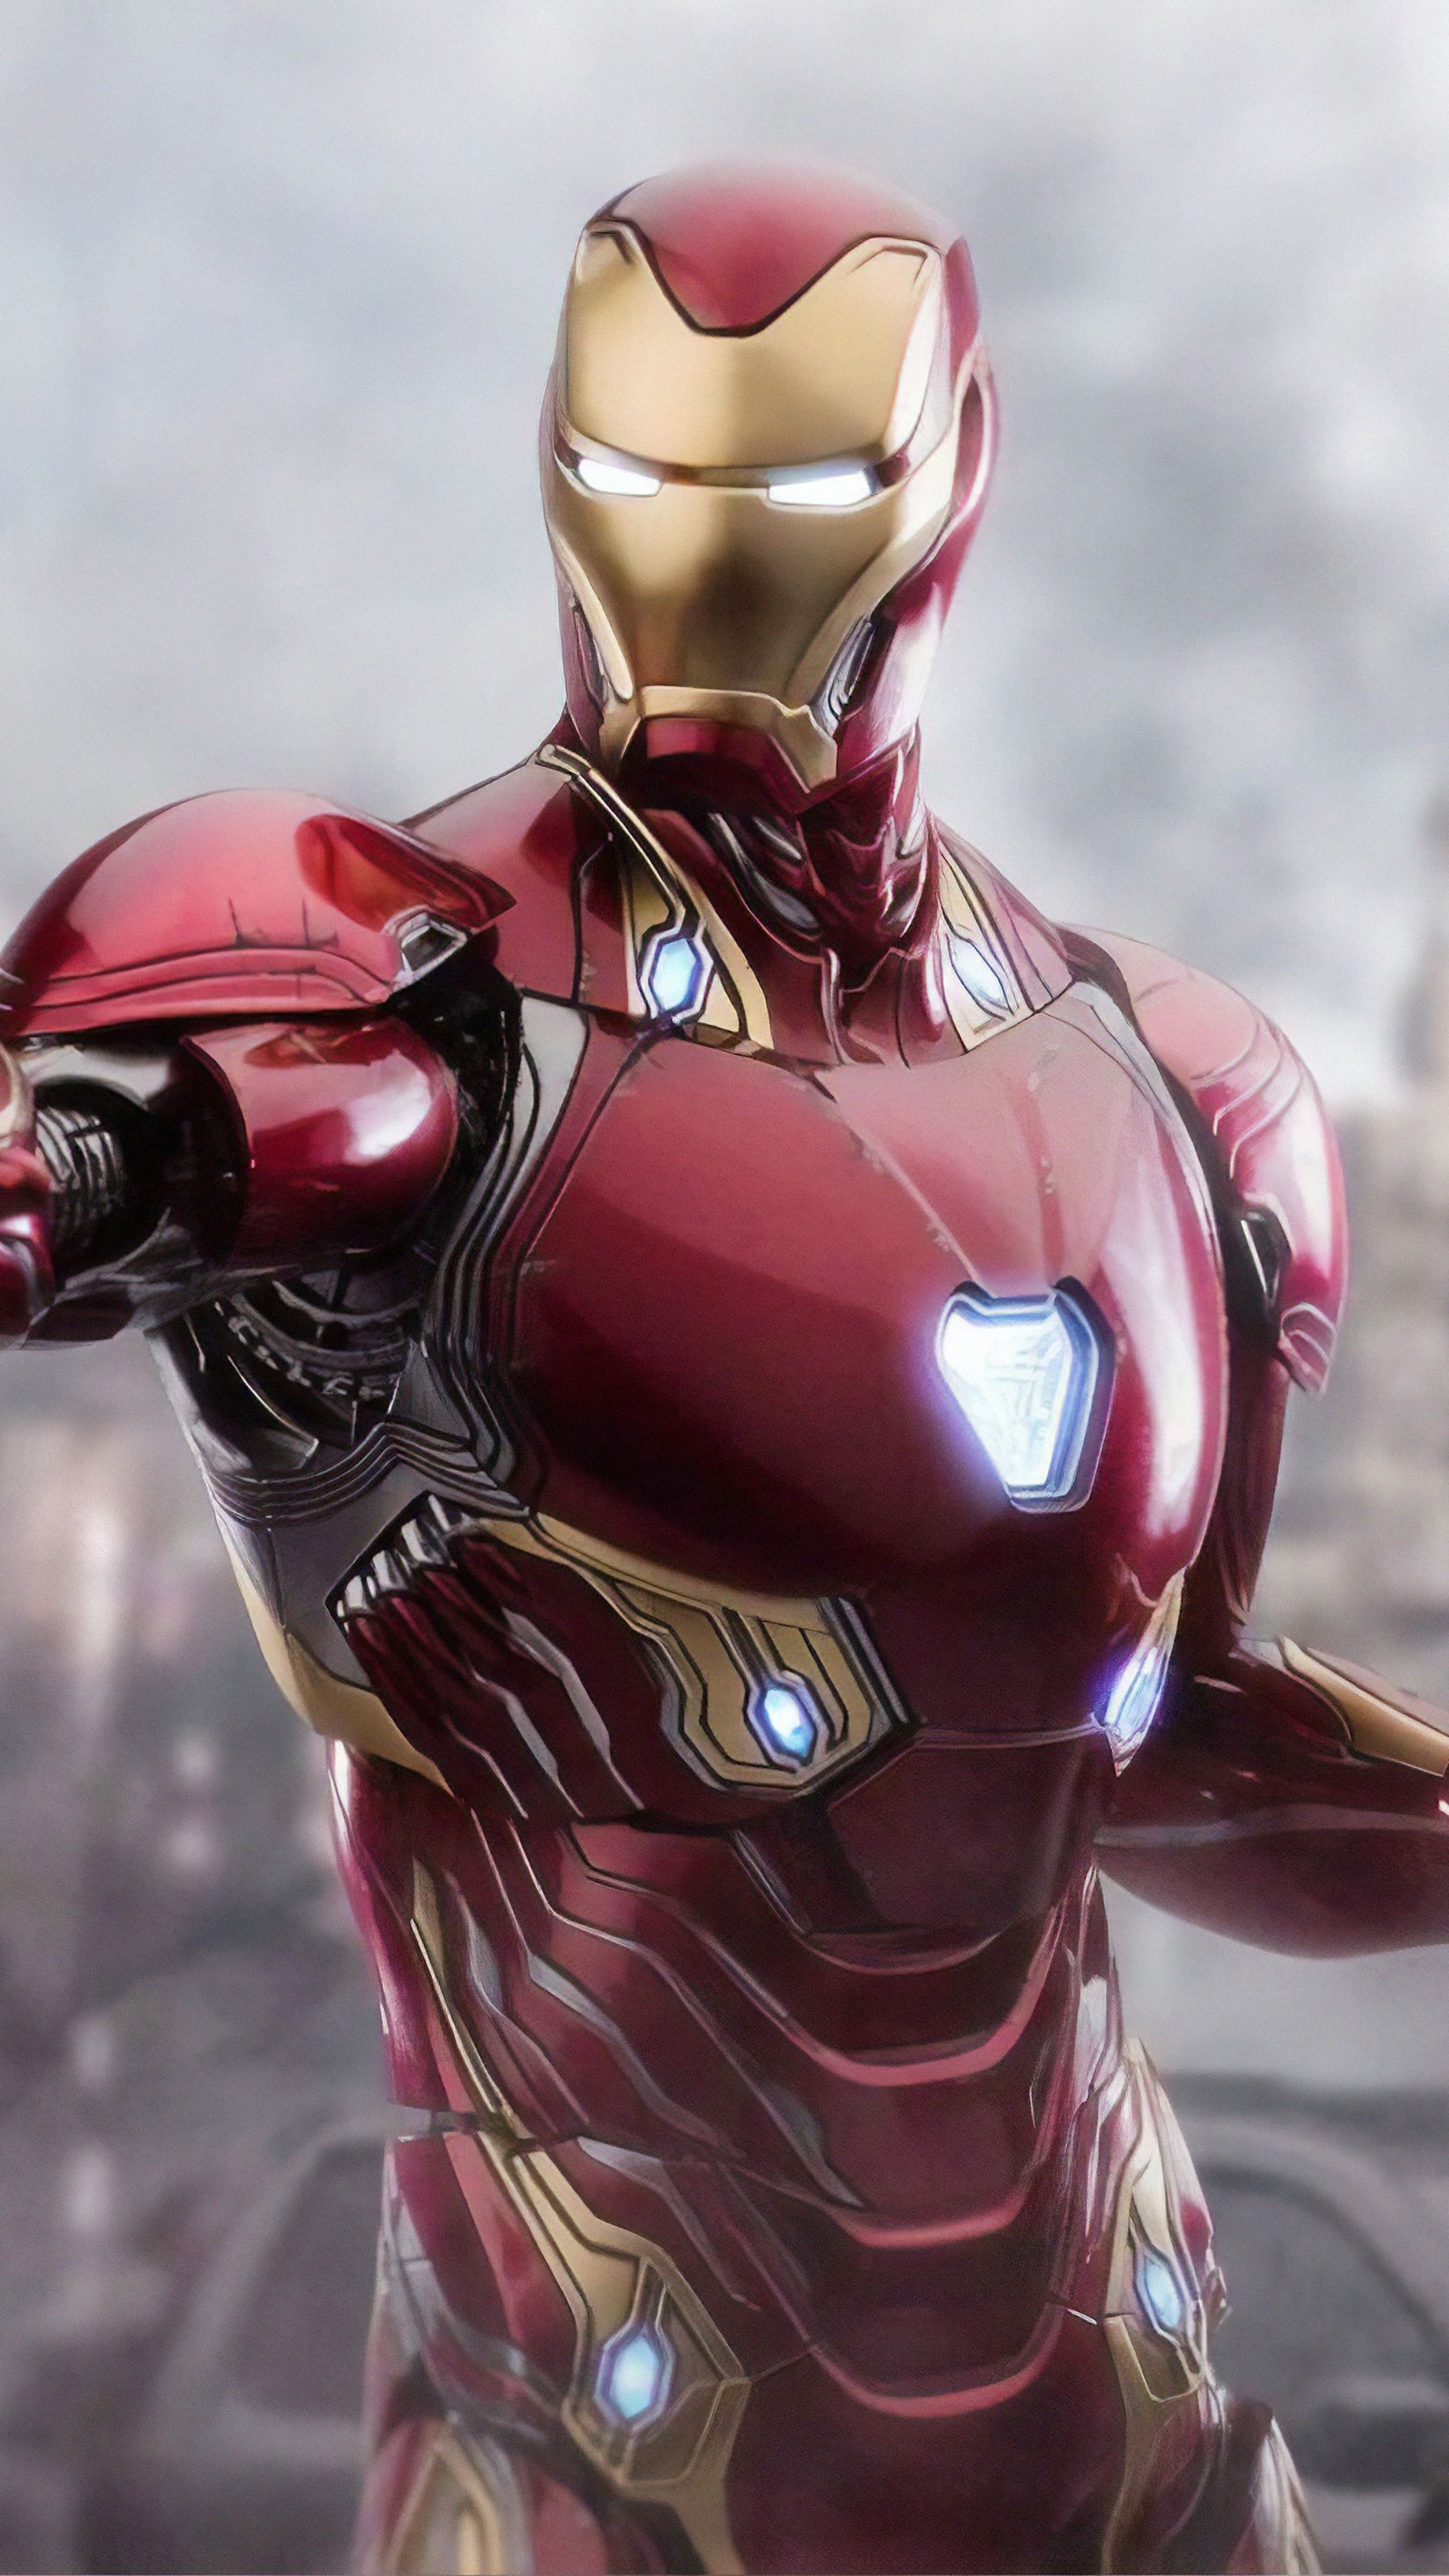 Iron Man Last Scene In Avengers Endgame Wallpapers